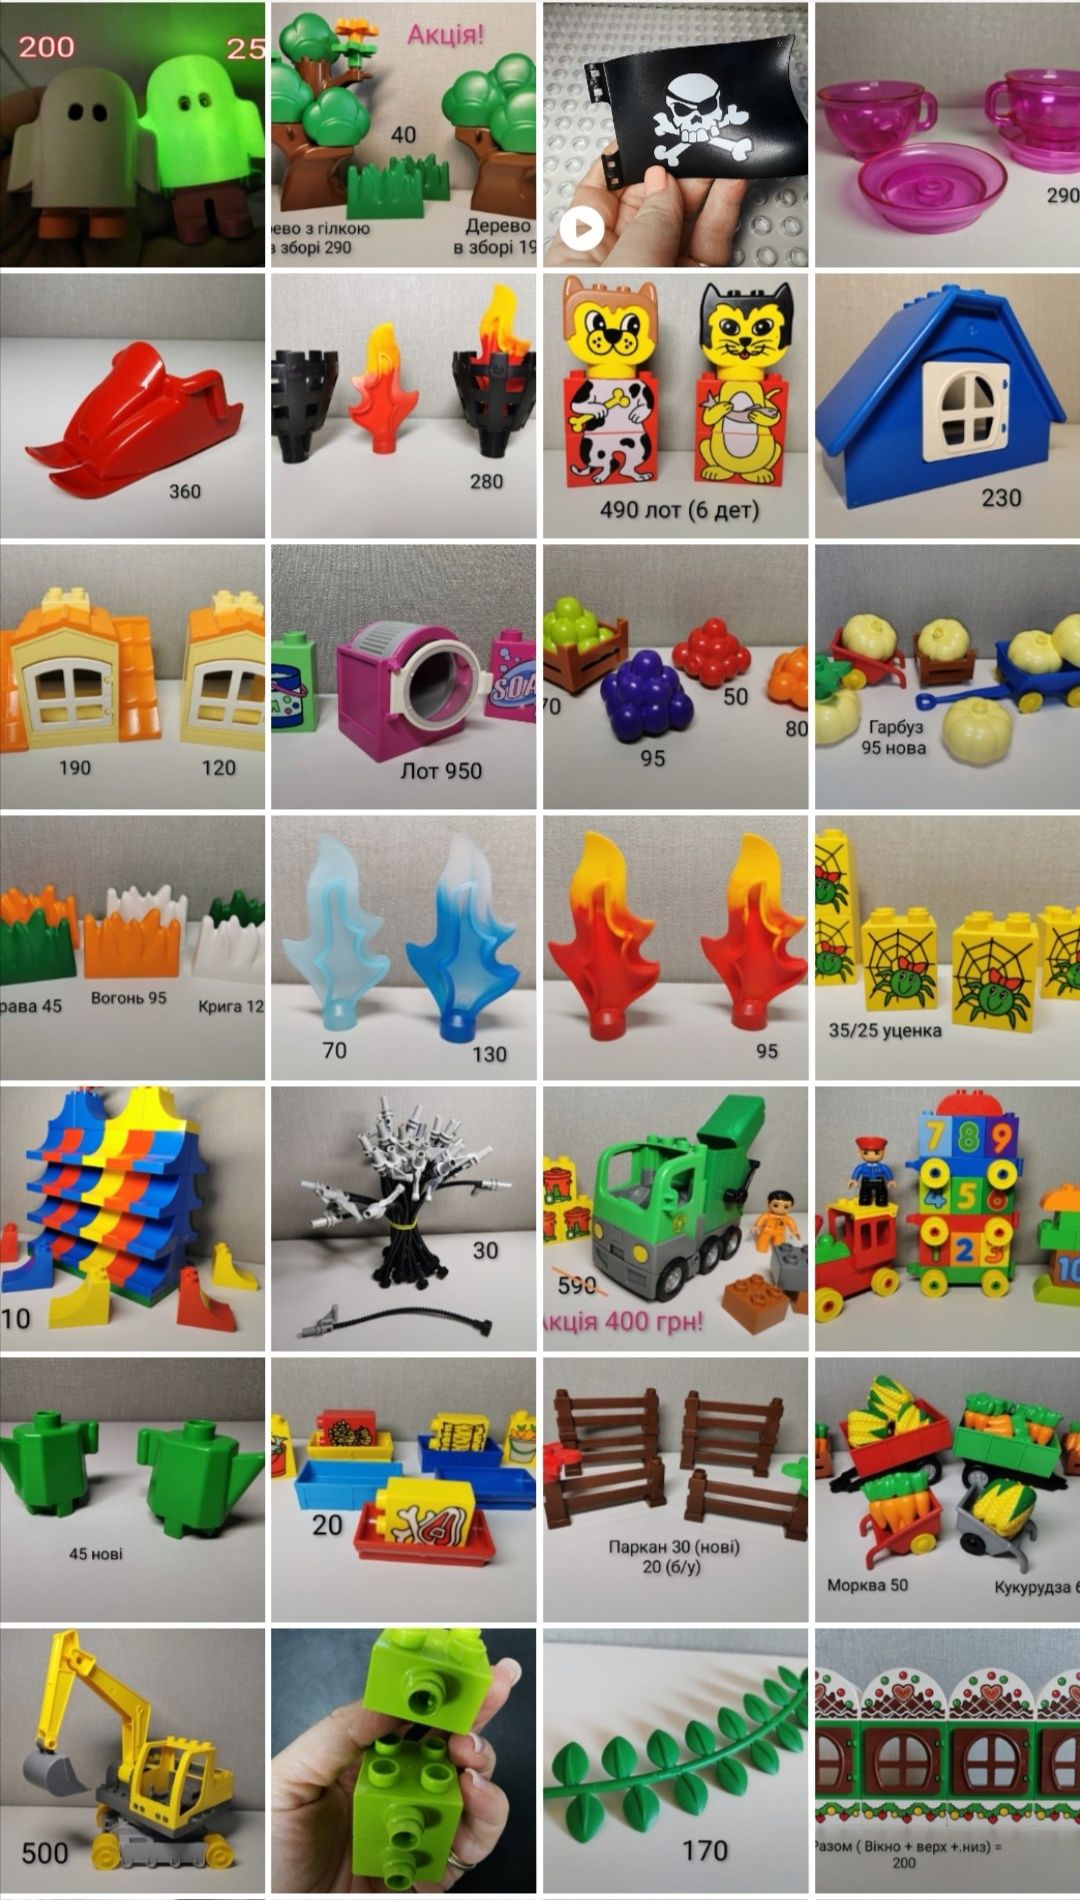 Lego Duplo оригінал нові і б/у